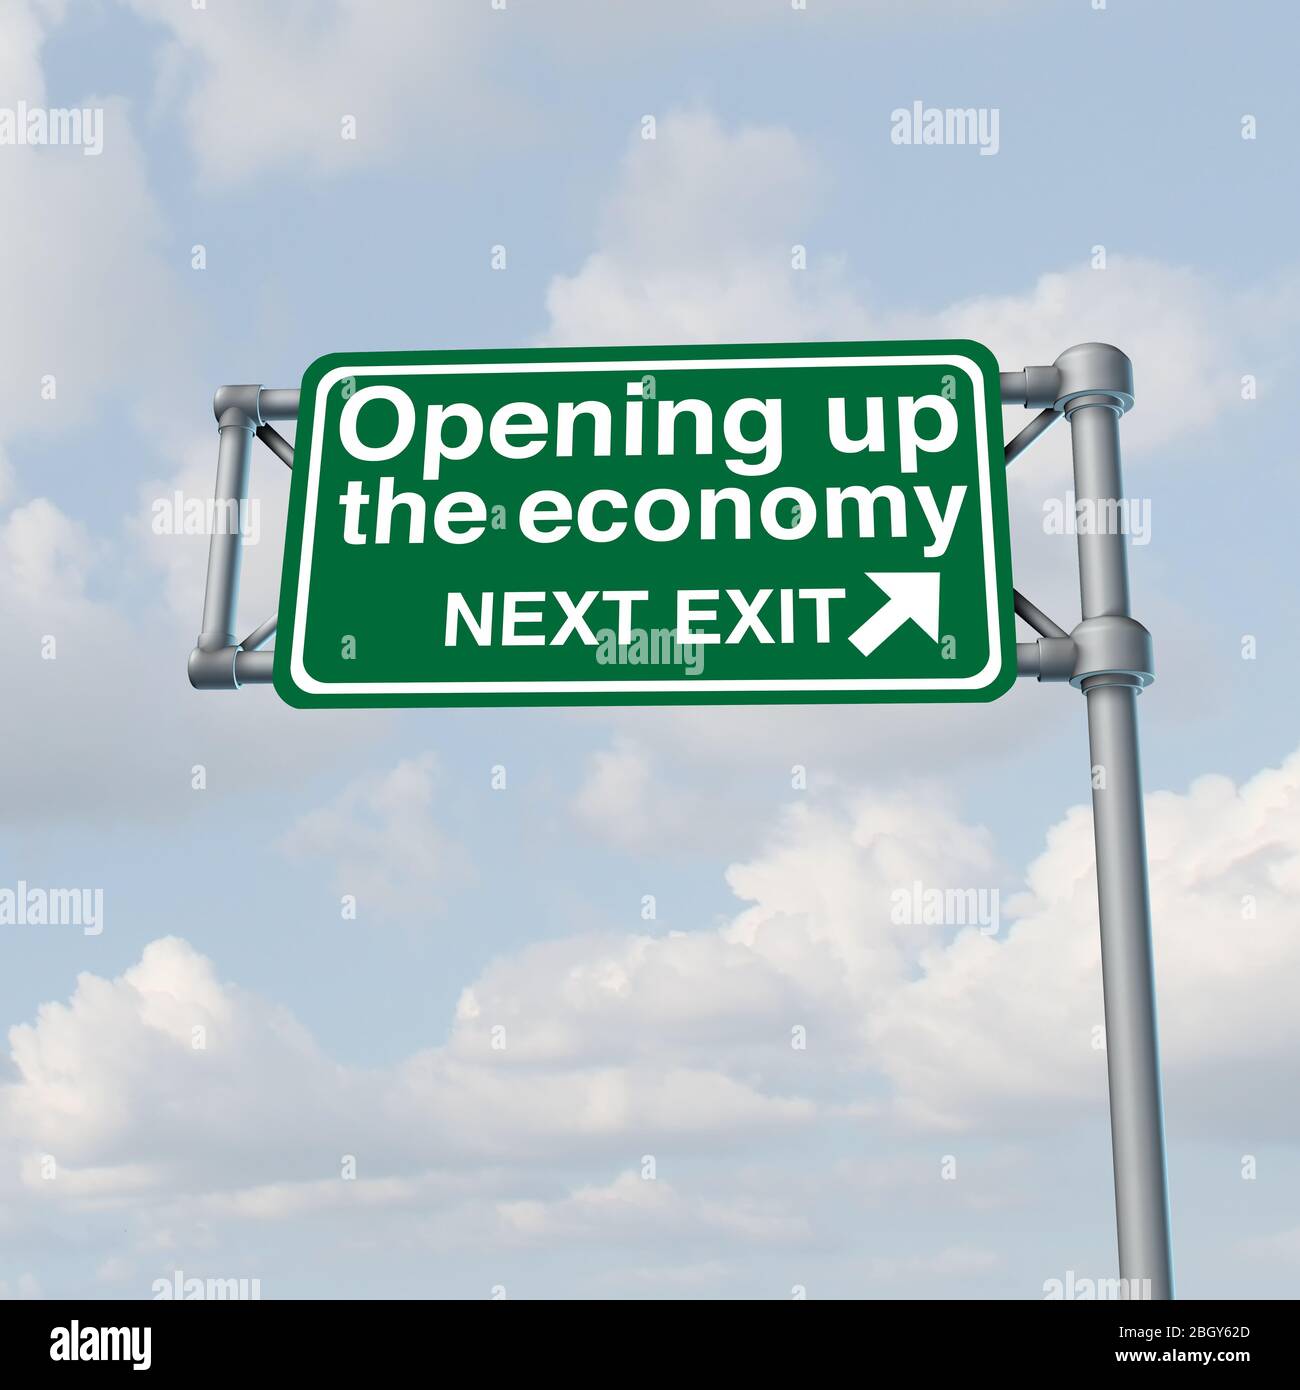 Die Wirtschaft zu öffnen und die Wirtschaftstätigkeit wieder zu öffnen und wieder an die Arbeit zu gehen, nachdem die Wirtschaft die staatliche Finanzpolitik und die Märkte wieder geöffnet hat. Stockfoto